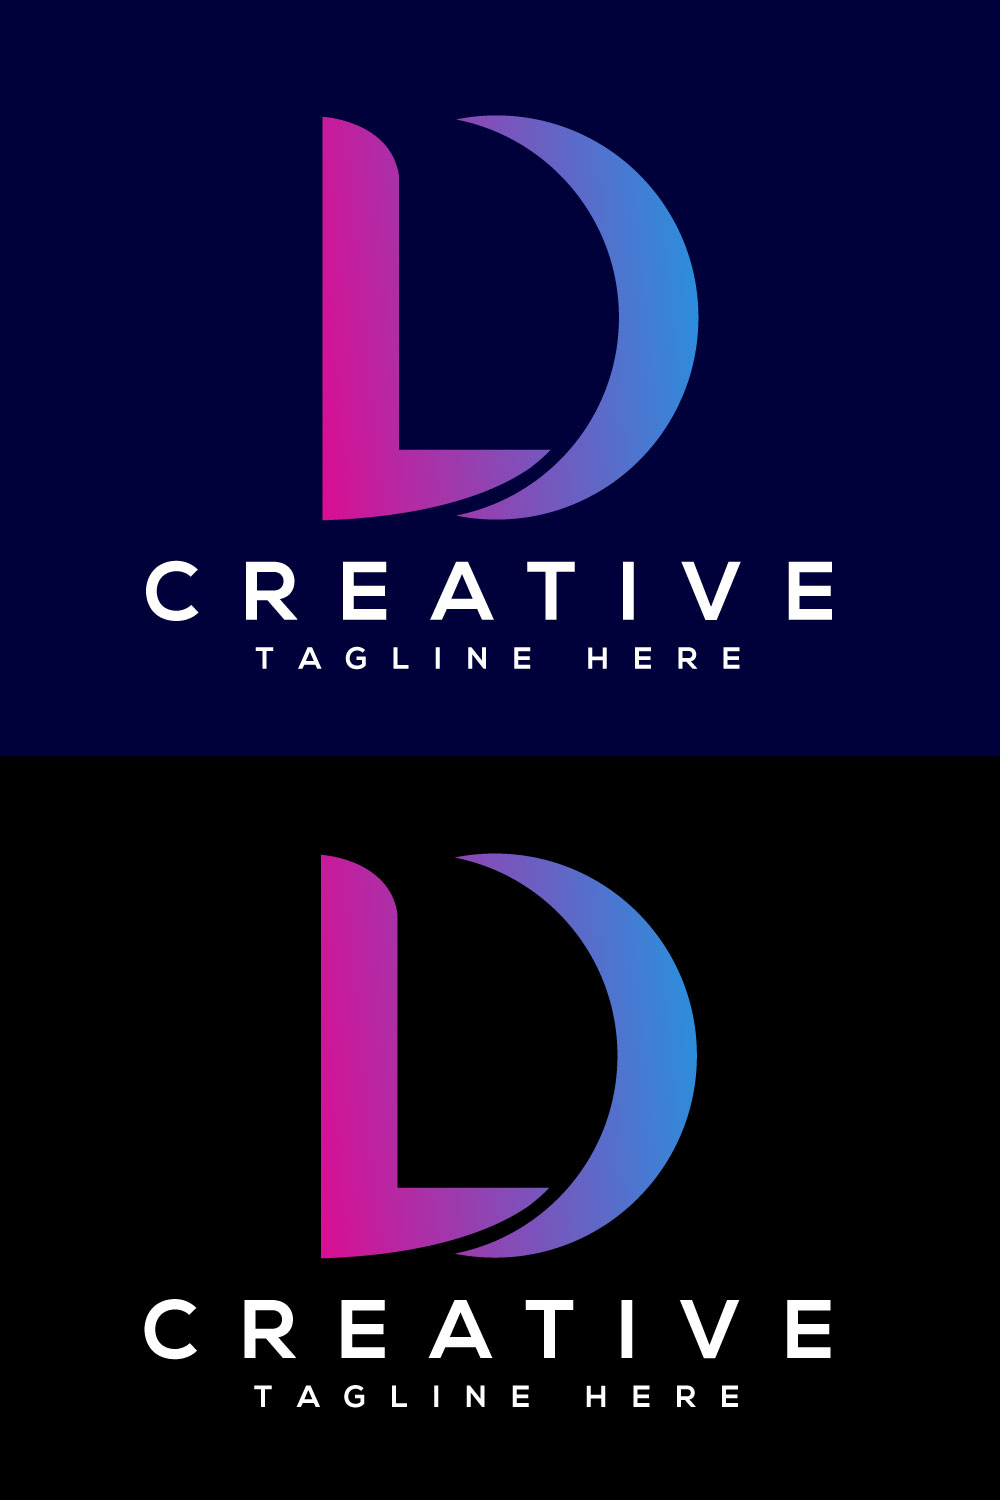 Letter LD Logo Design pinterest image.